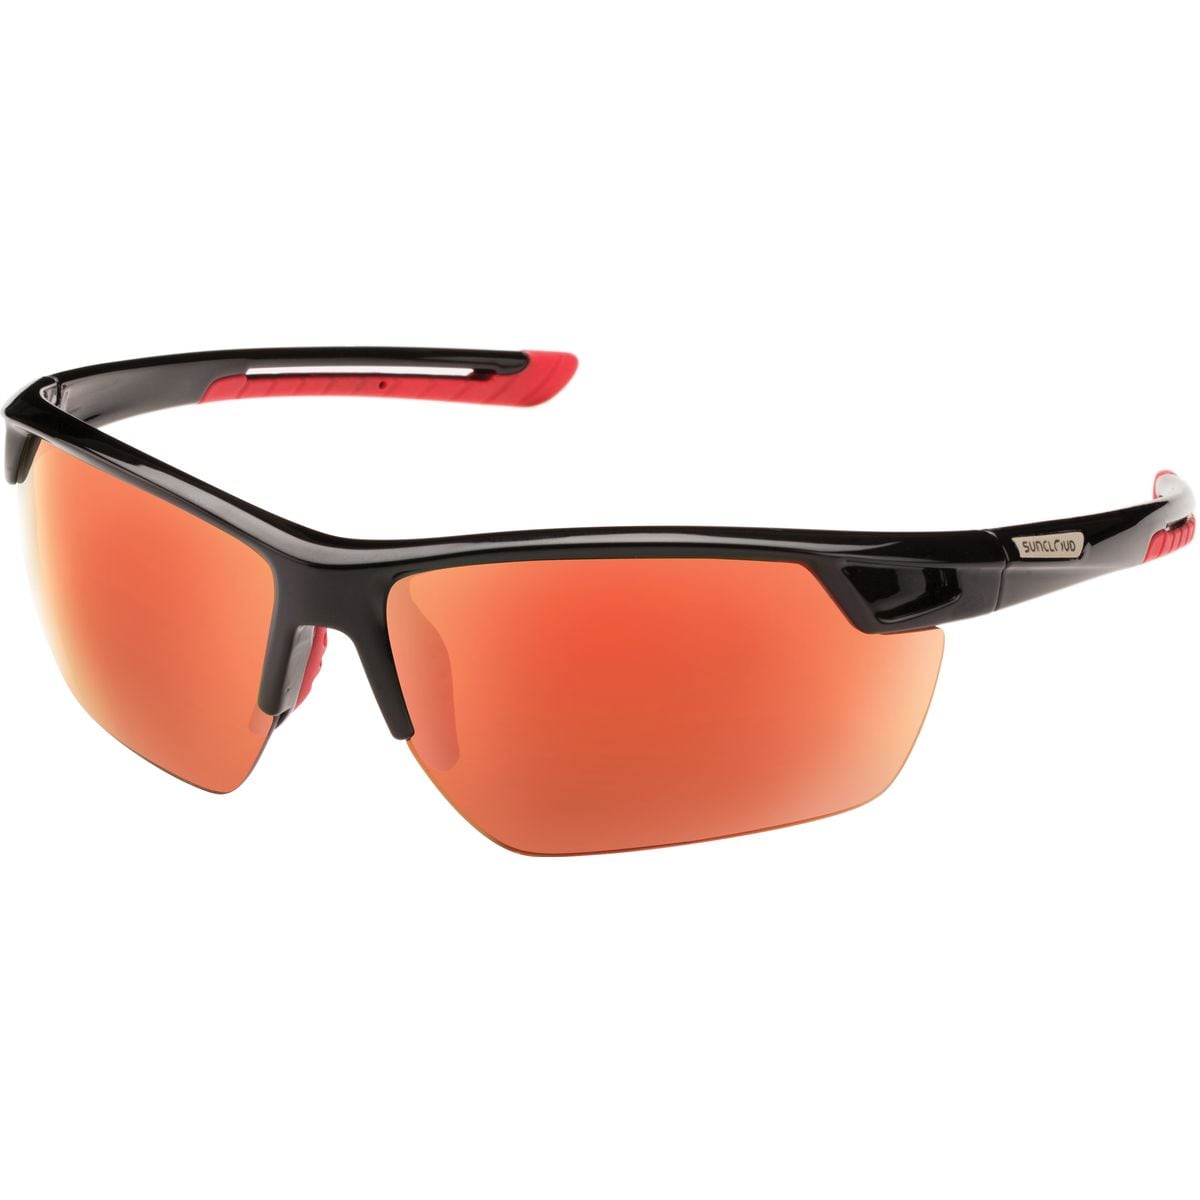 Поляризованные солнцезащитные очки contender Suncloud Polarized Optics, цвет black/red mirror очки солнцезащитные stylemark polarized l1475a